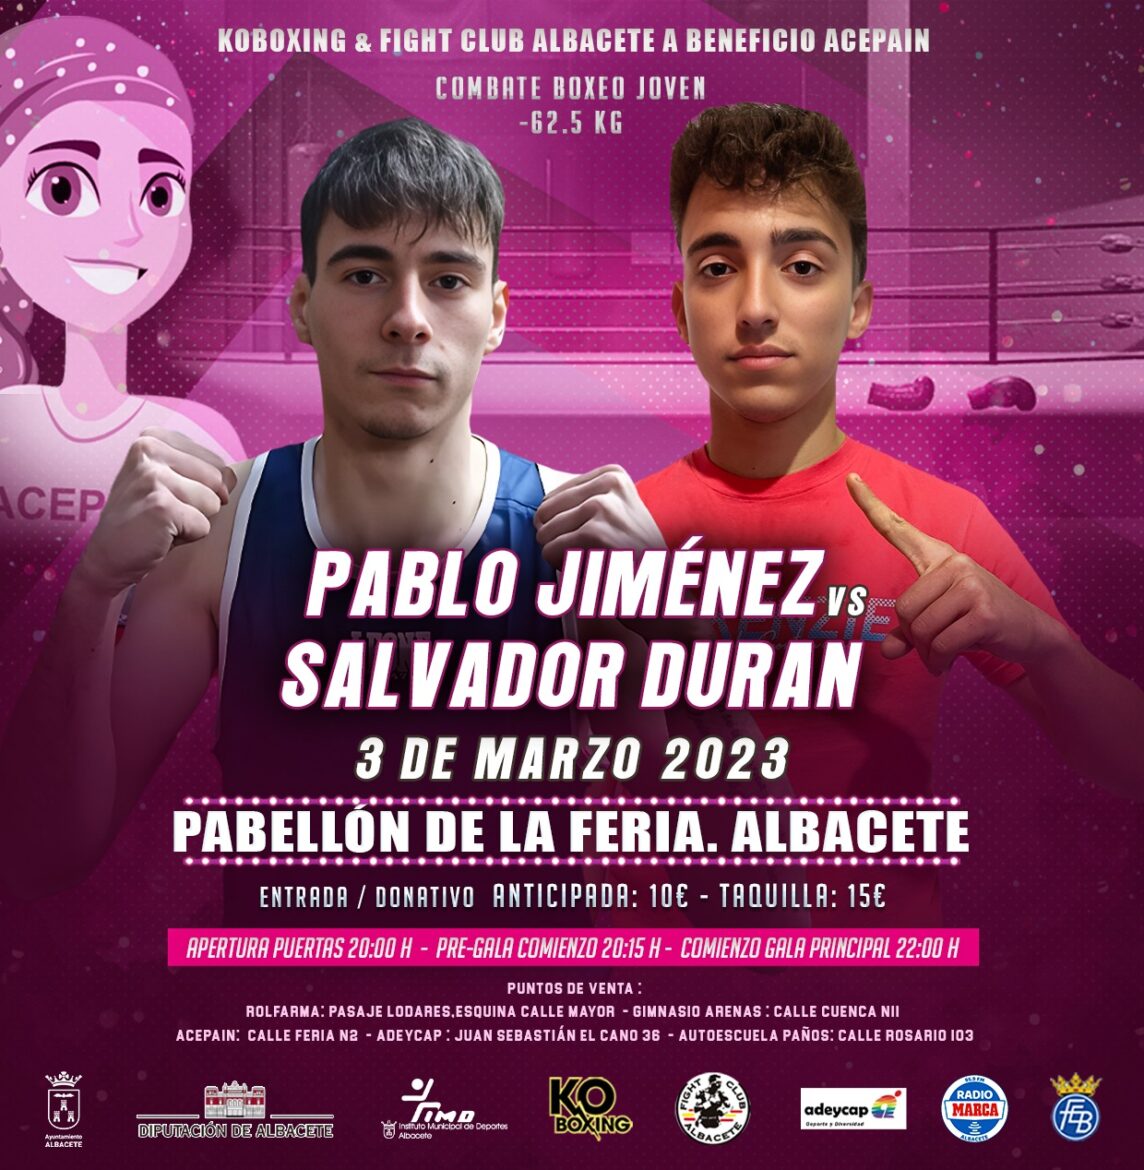 El viernes vuelve el boxeo a Albacete con una espectacular gala benéfica